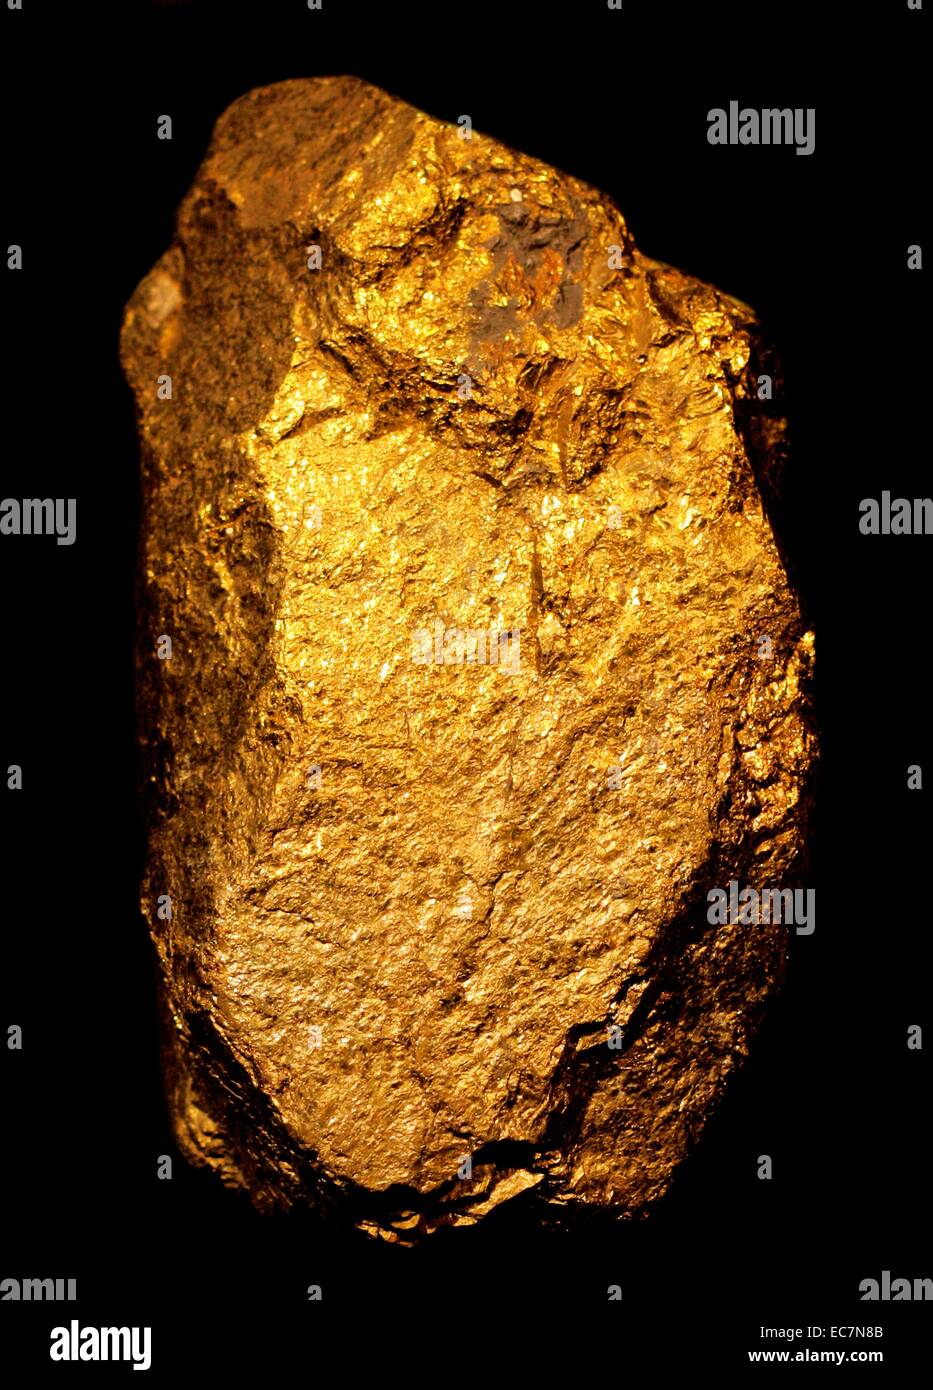 Calcopirita es un mineral de sulfuro de cobre hierro que crystalizes en el sistema tetragonal. A brassy tiene un color amarillo dorado y una dureza de 3,5 a 4 en la escala de Mohs. Foto de stock